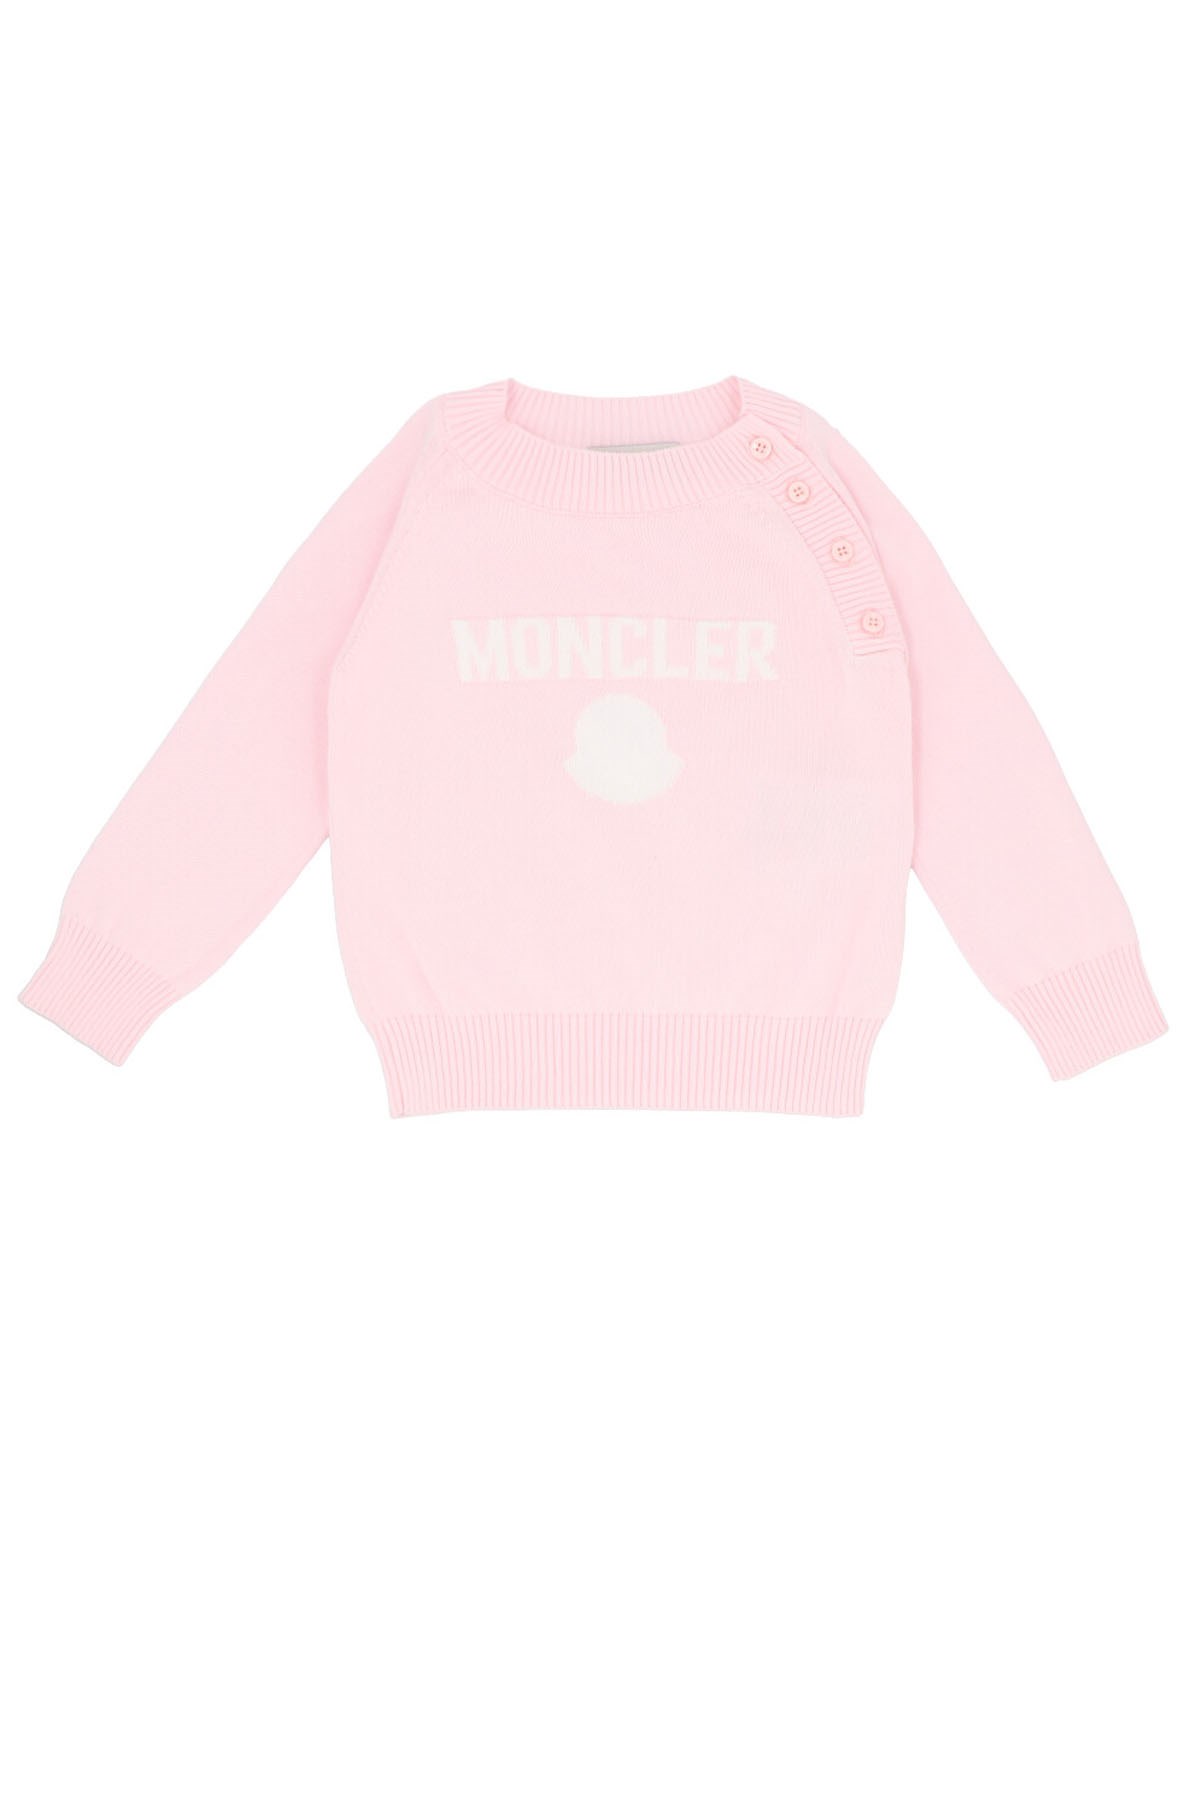 MONCLER ENFANT Logo Sweater